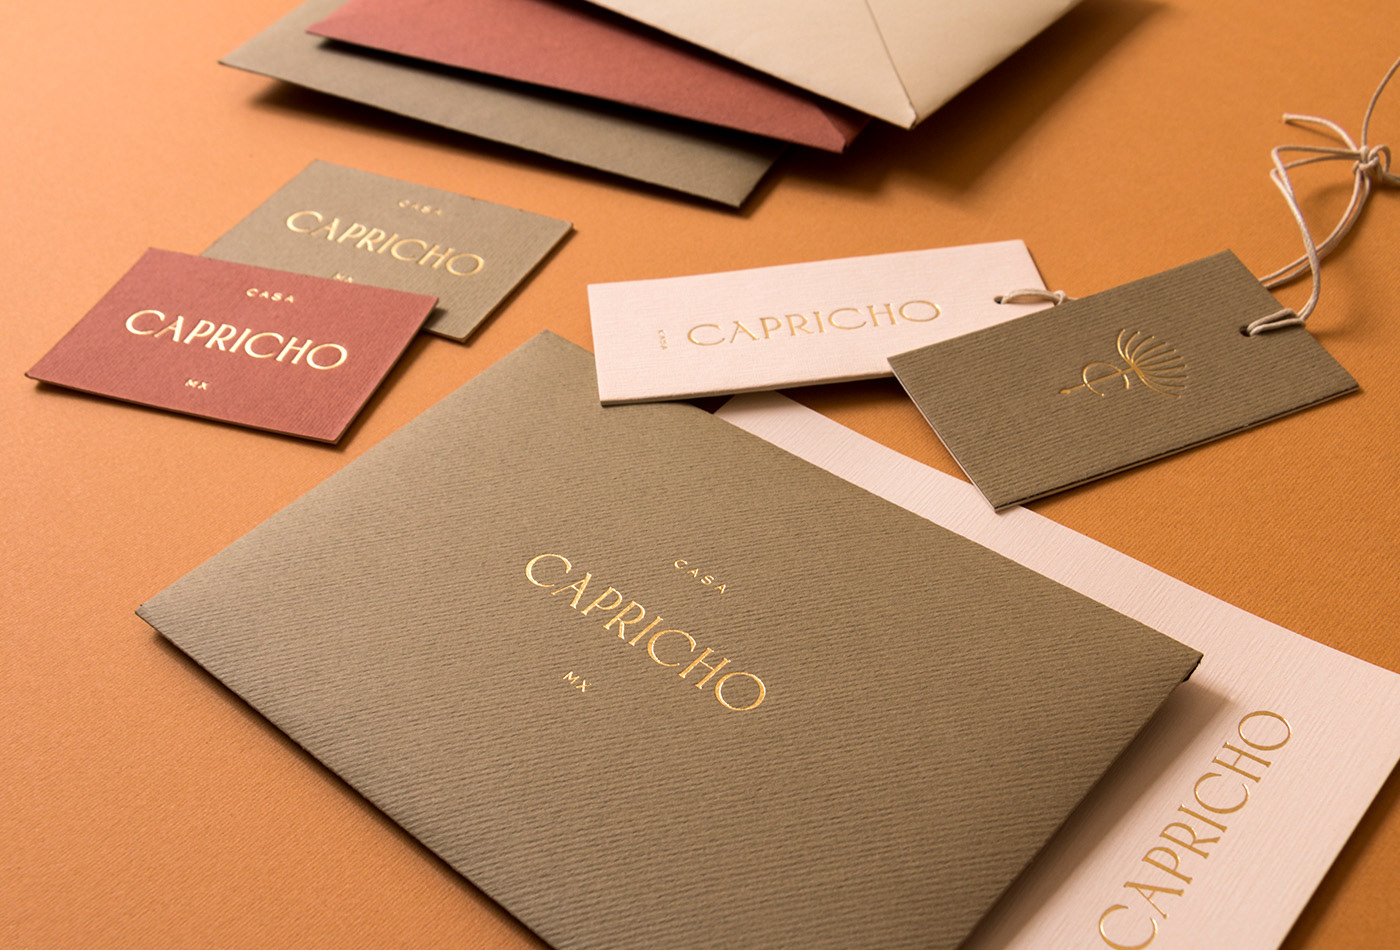 极简，极美！Casa Capricho软装饰品品牌形象设计